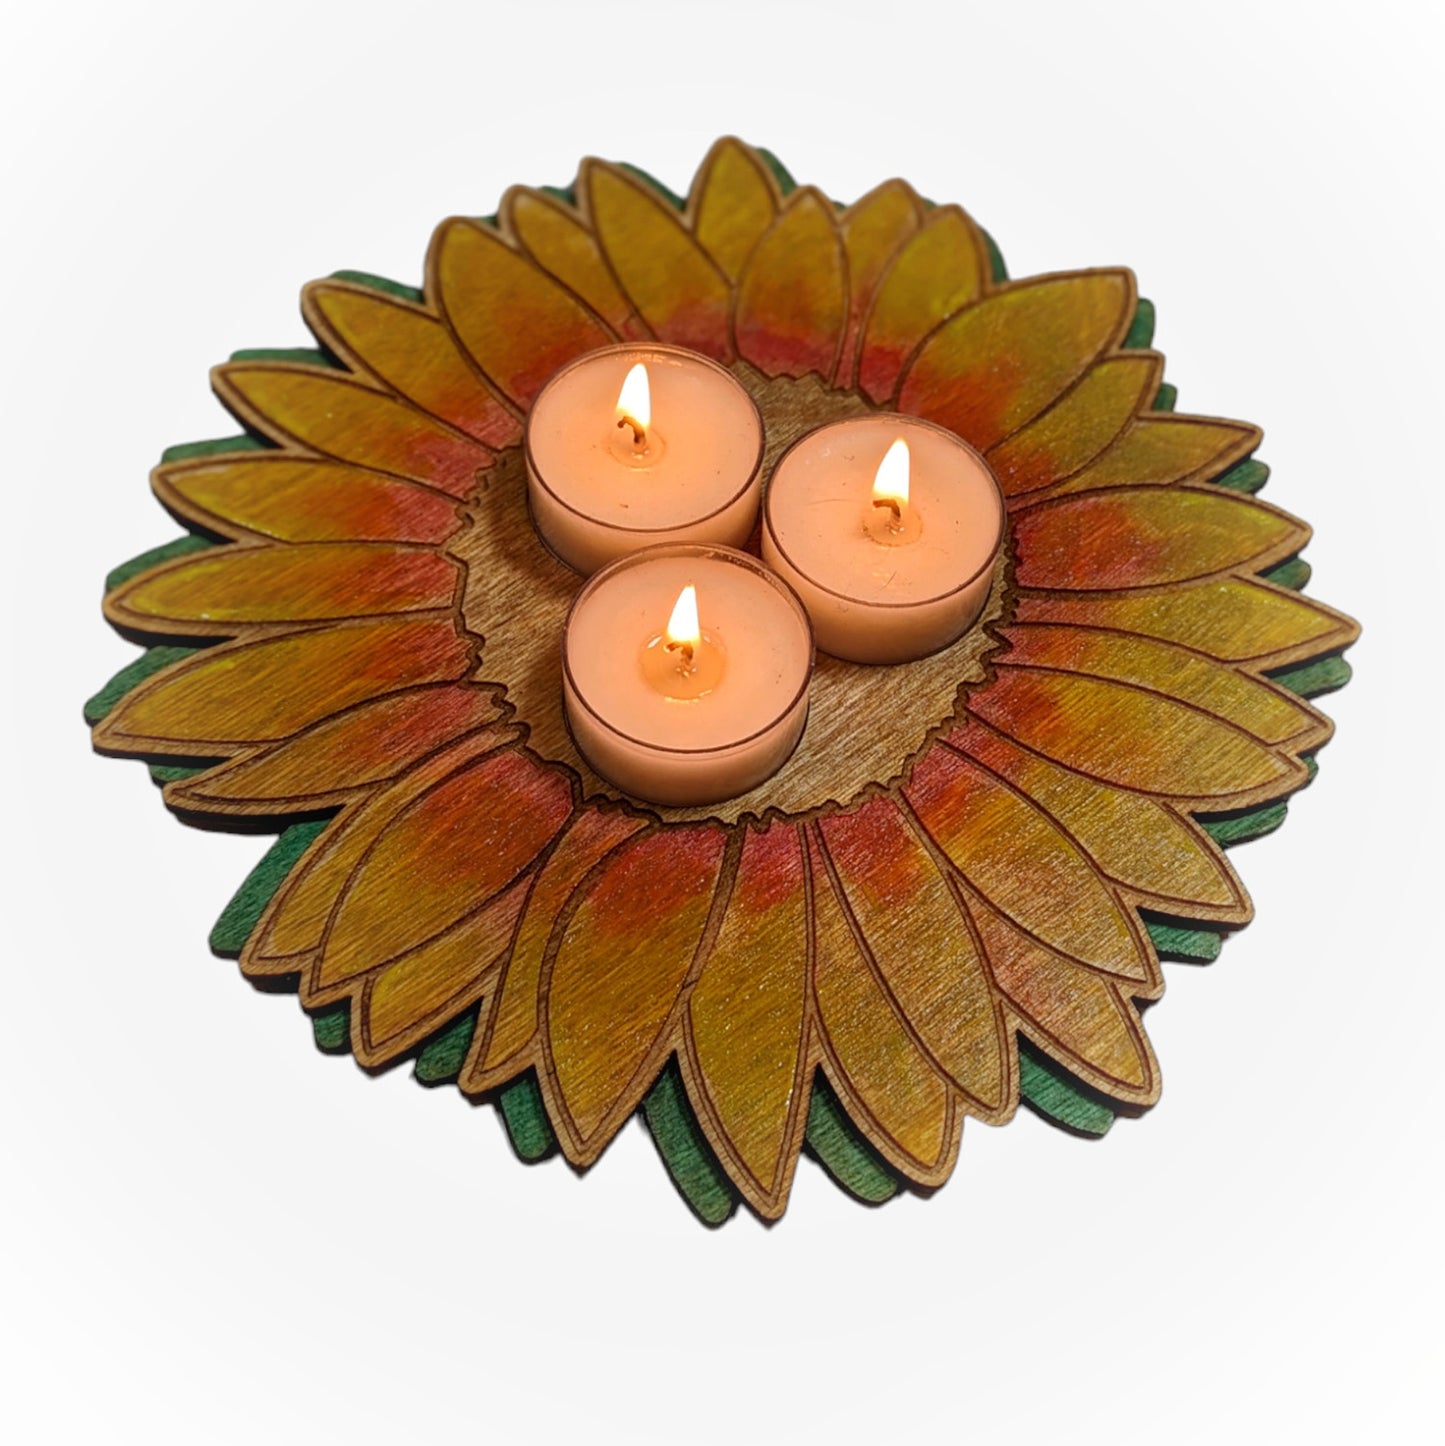 Sunflower Candleholder Tea Light Holder - Summer or Fall Candle Home Décor